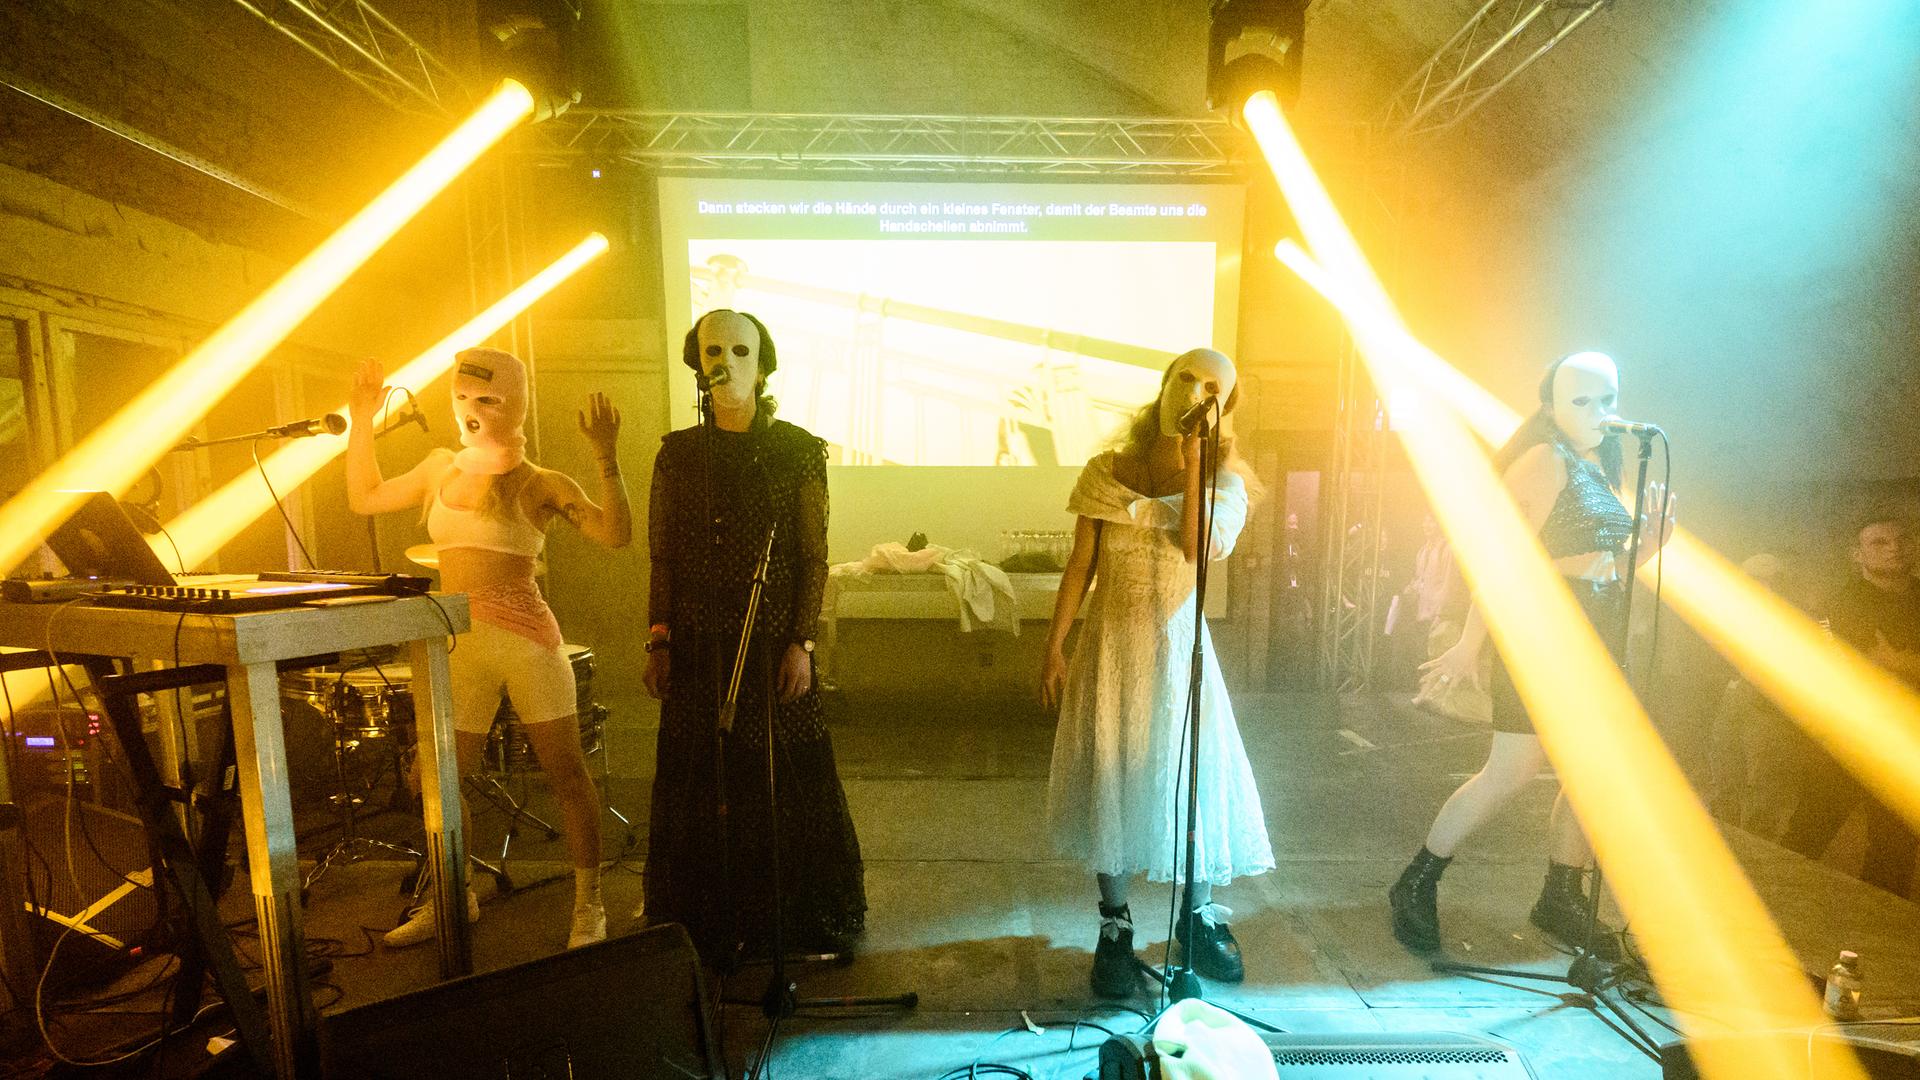 Von links nach rechts: Diana Burkot, Anton Ponomarev, Maria Aljochina und Olga Borisova beim Konzert von Pussy Riot im Funkhaus Berlin am 12. Mai 2022. Sie tragen weiße Masken.